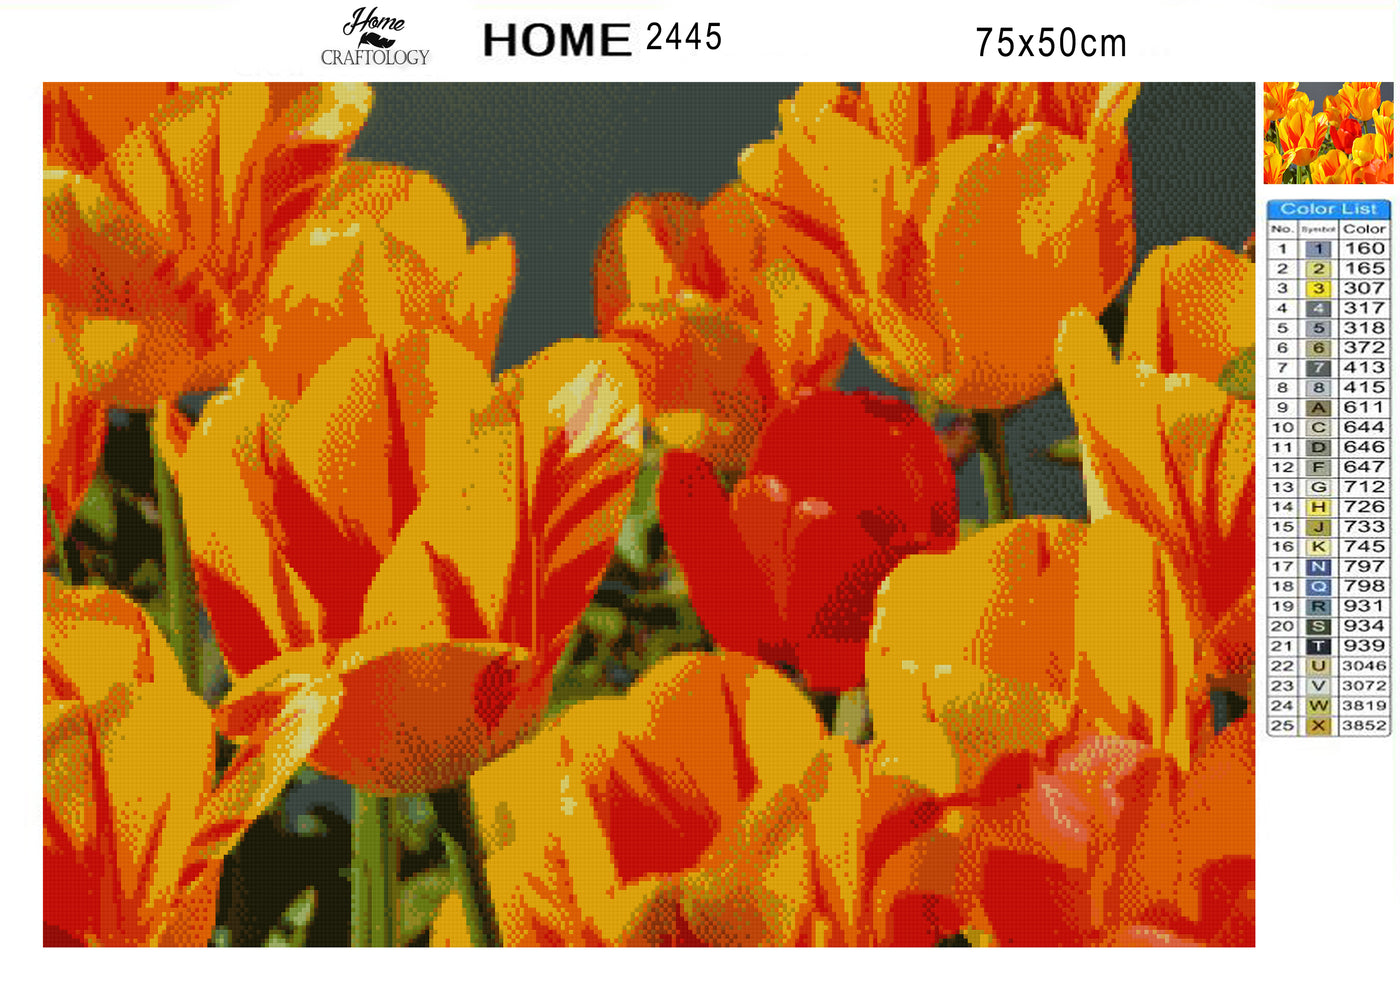 Yellow and Red Tulips - Premium Diamond Painting Kit